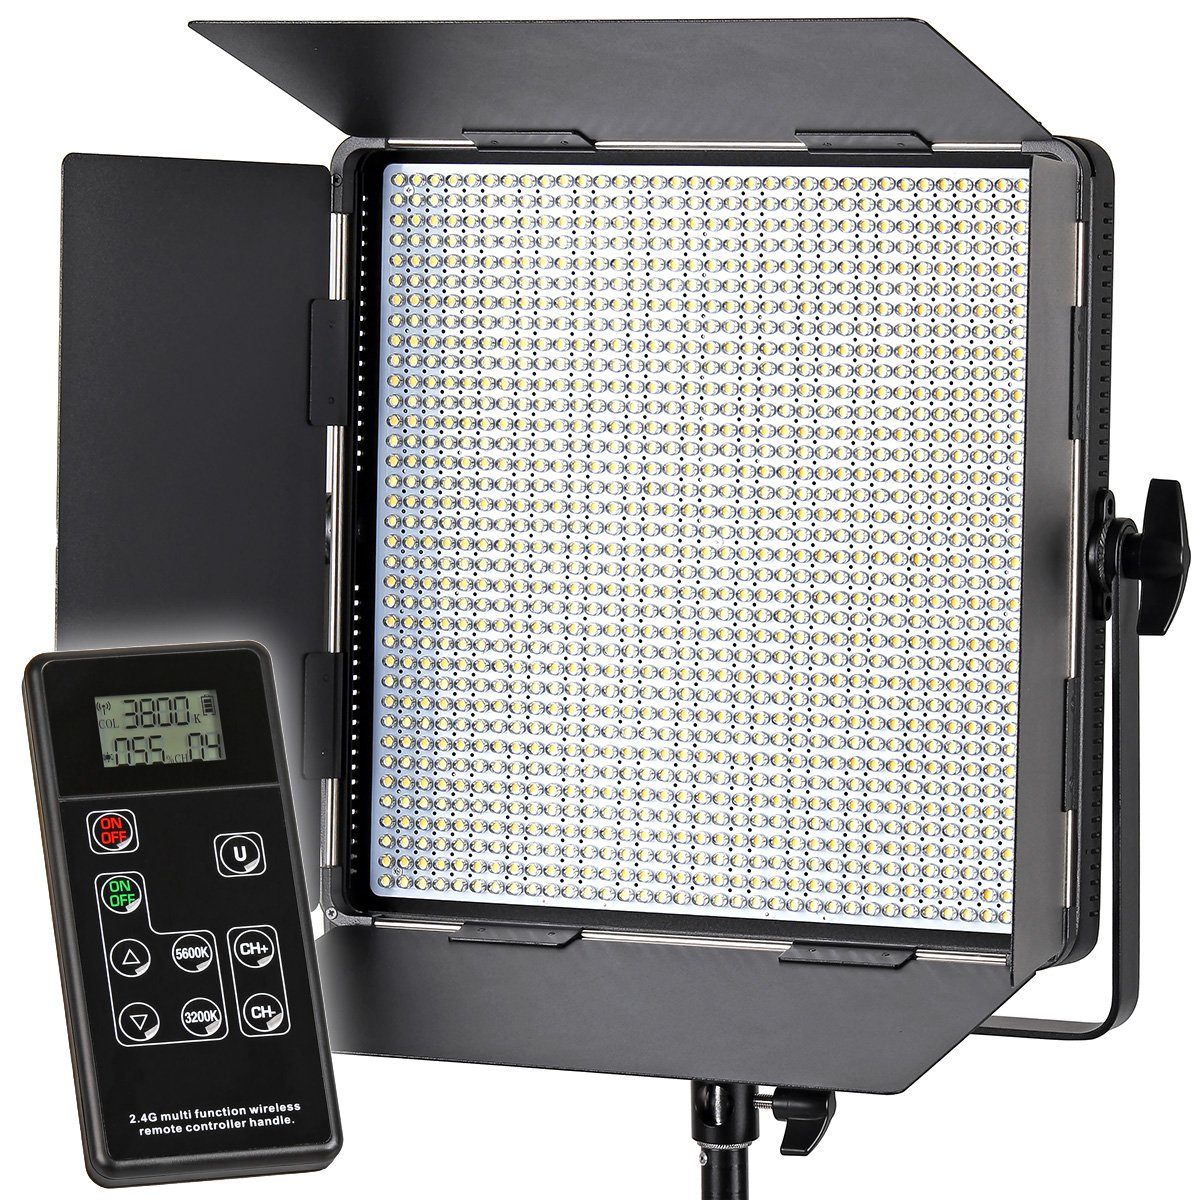 ayex LED Bilderleuchte Profi-Videoleuchte 1296 LEDs DMX kompatibel inkl. Funk-Fernbedienung | Bilderleuchten